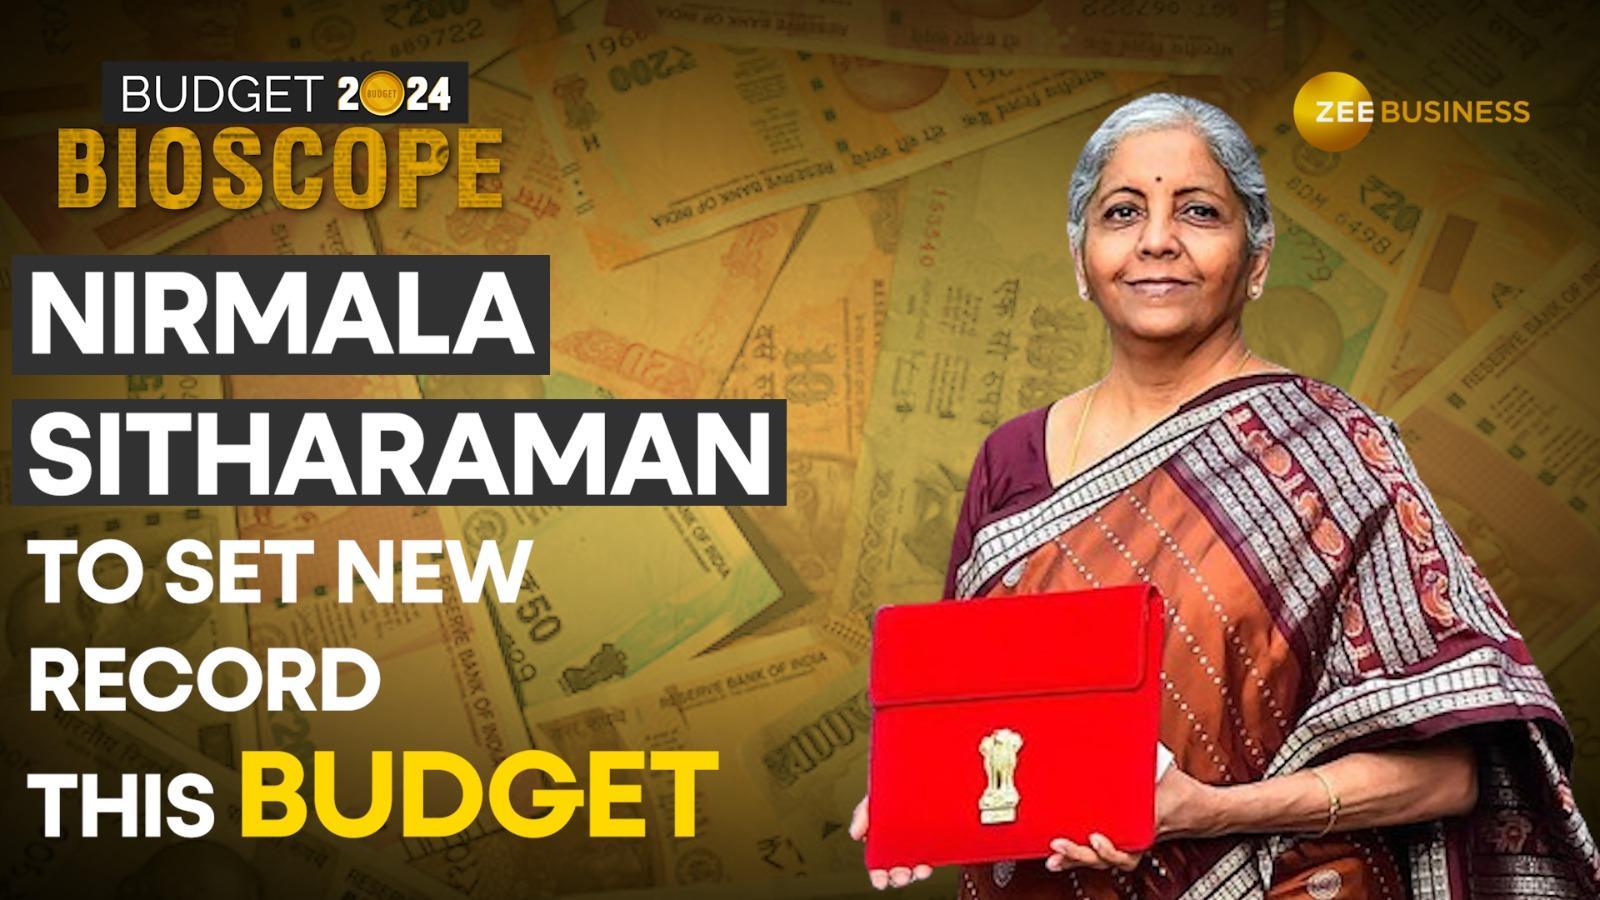 Budget 2024: Nirmala Sitharaman Sets Record with Sixth Consecutive Budget 